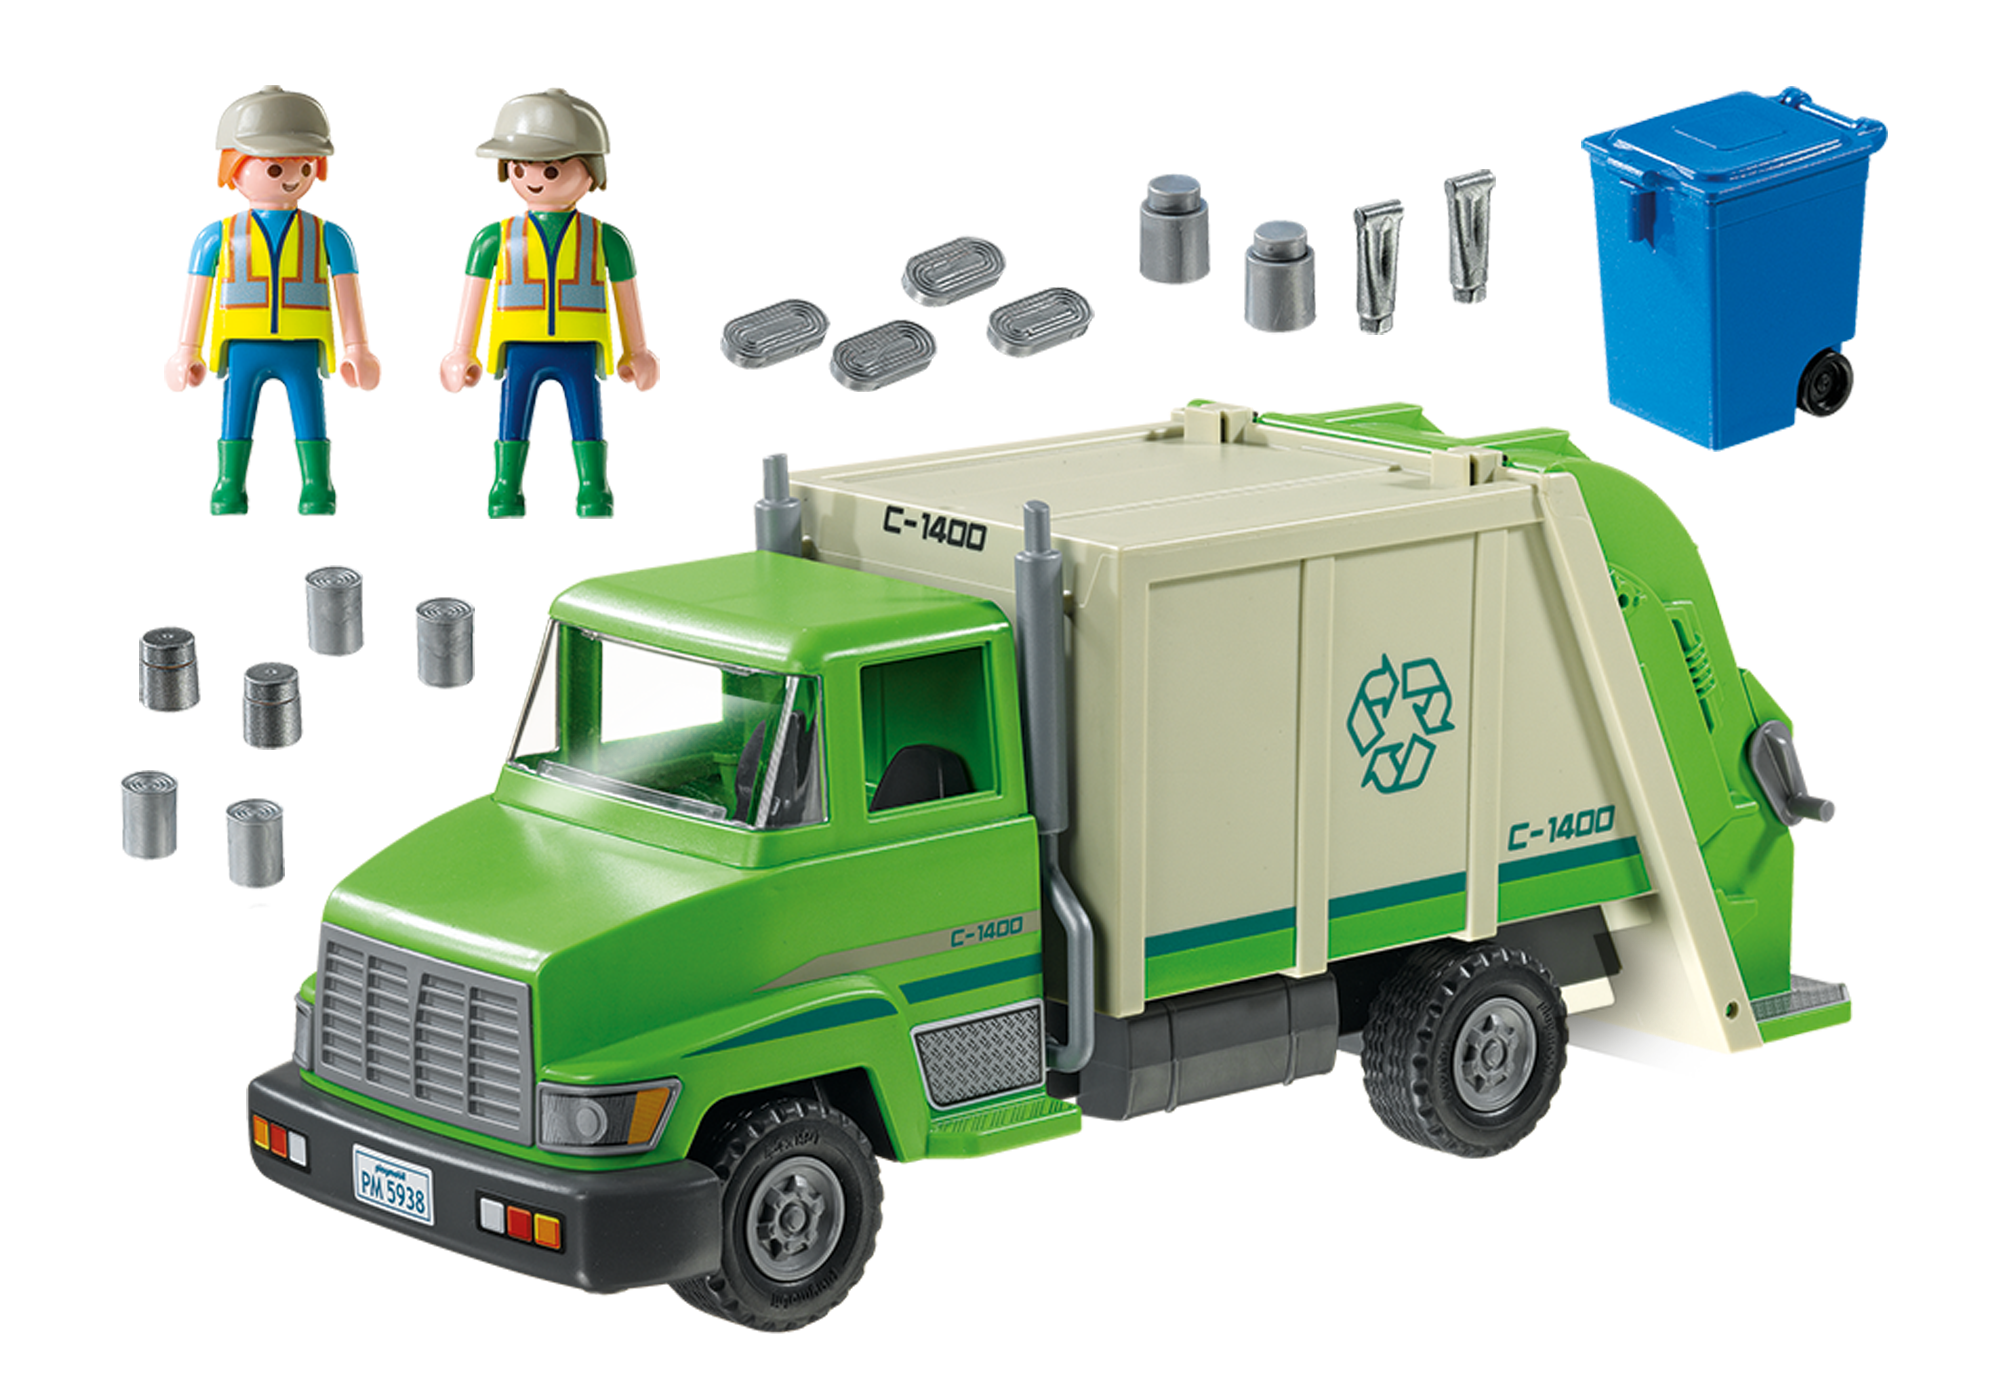 playmobil garbage truck